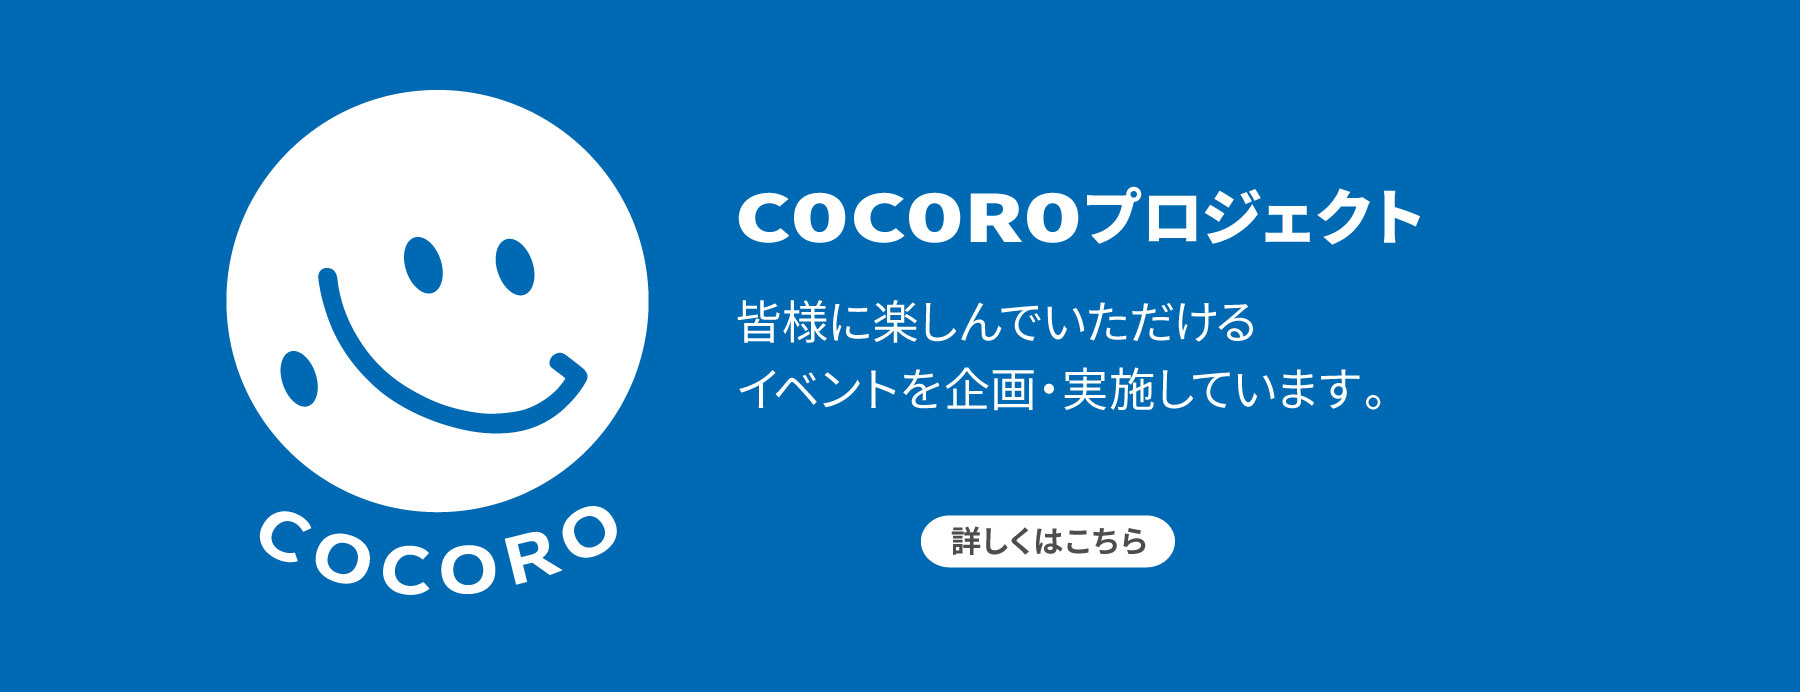 COCOROプロジェクトは皆様に楽しんでいただけるイベントを企画・実施しています。